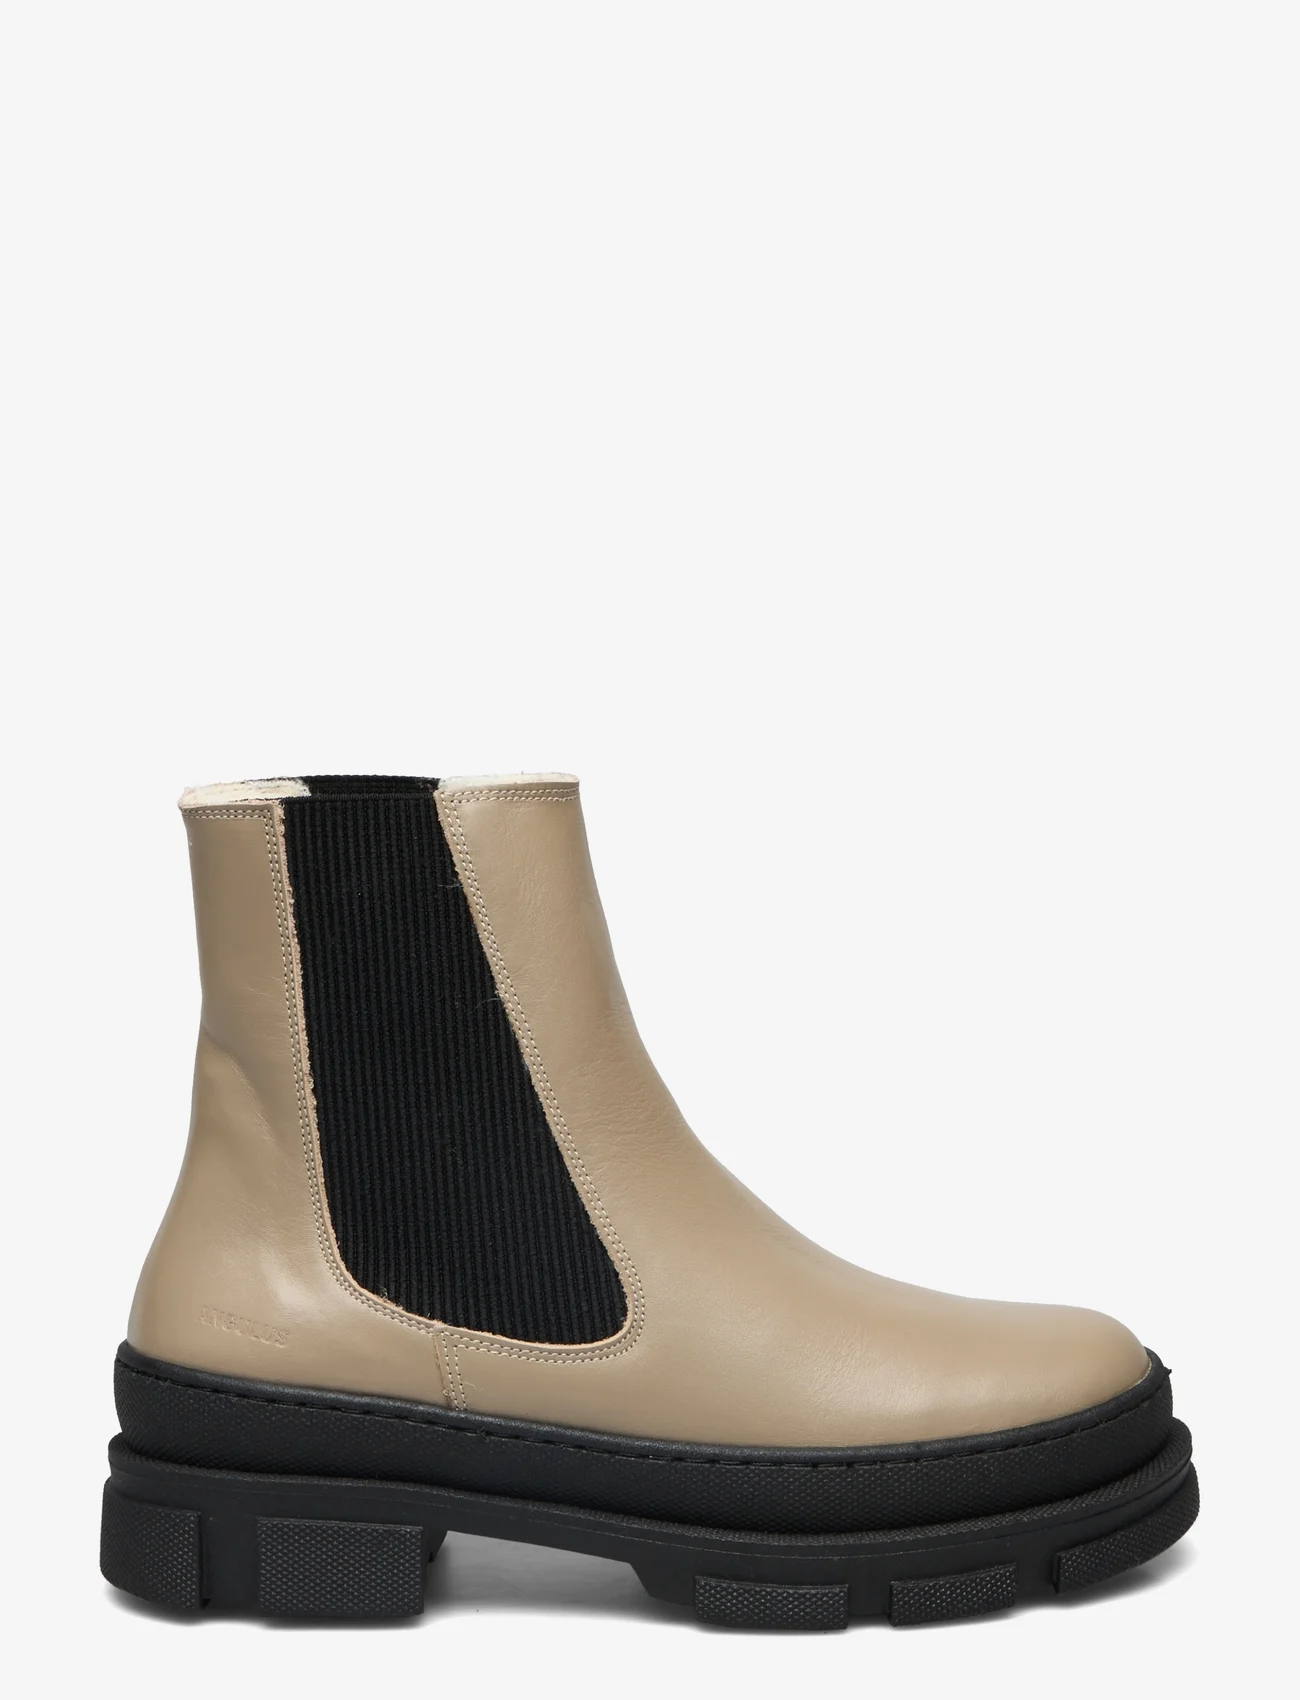 ANGULUS - Boots - flat - chelsea-saapad - 1571/019 beige/black - 1